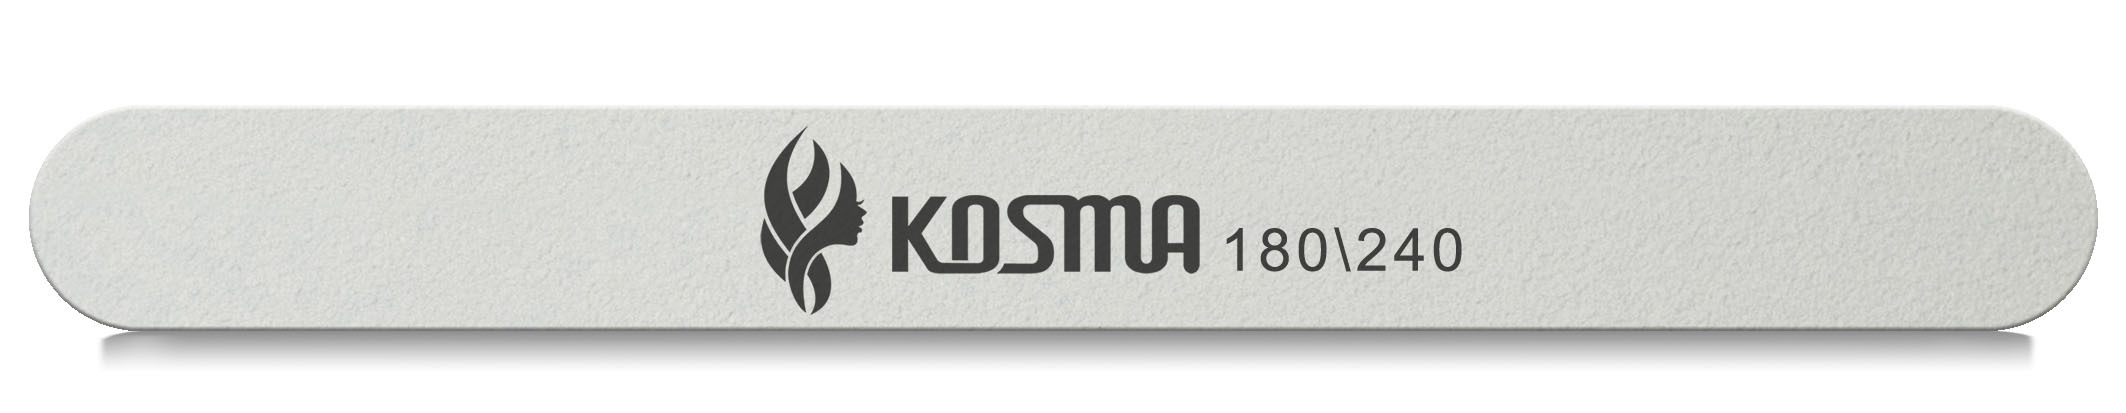 Купить Пилка KOSMA прямая большая белая 180/240 пластиковая основа 1 шт.